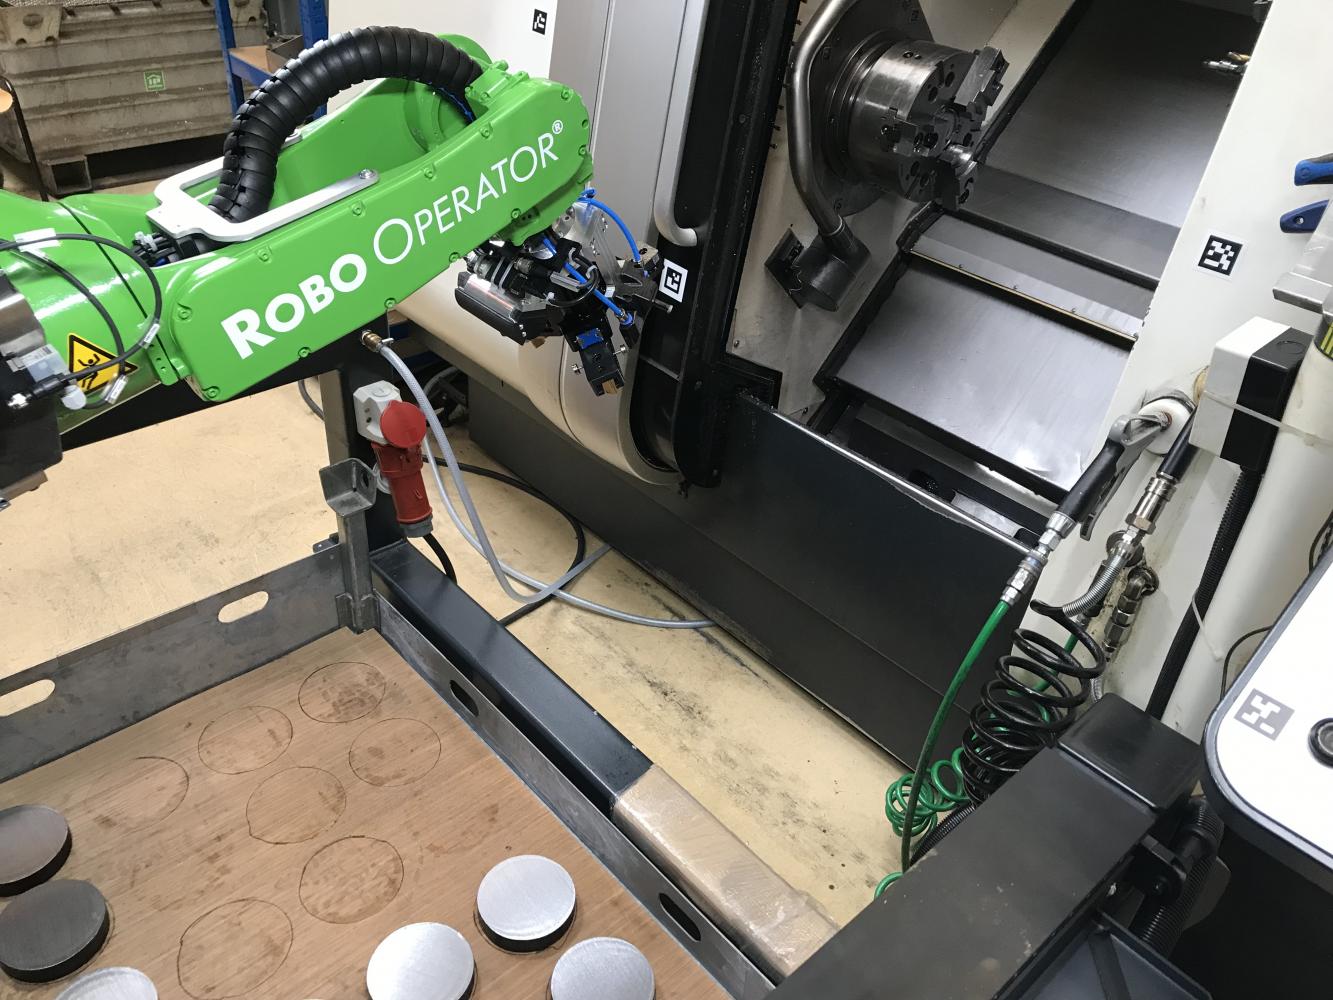 Robo Operator® jetzt neu mit grünem Arm